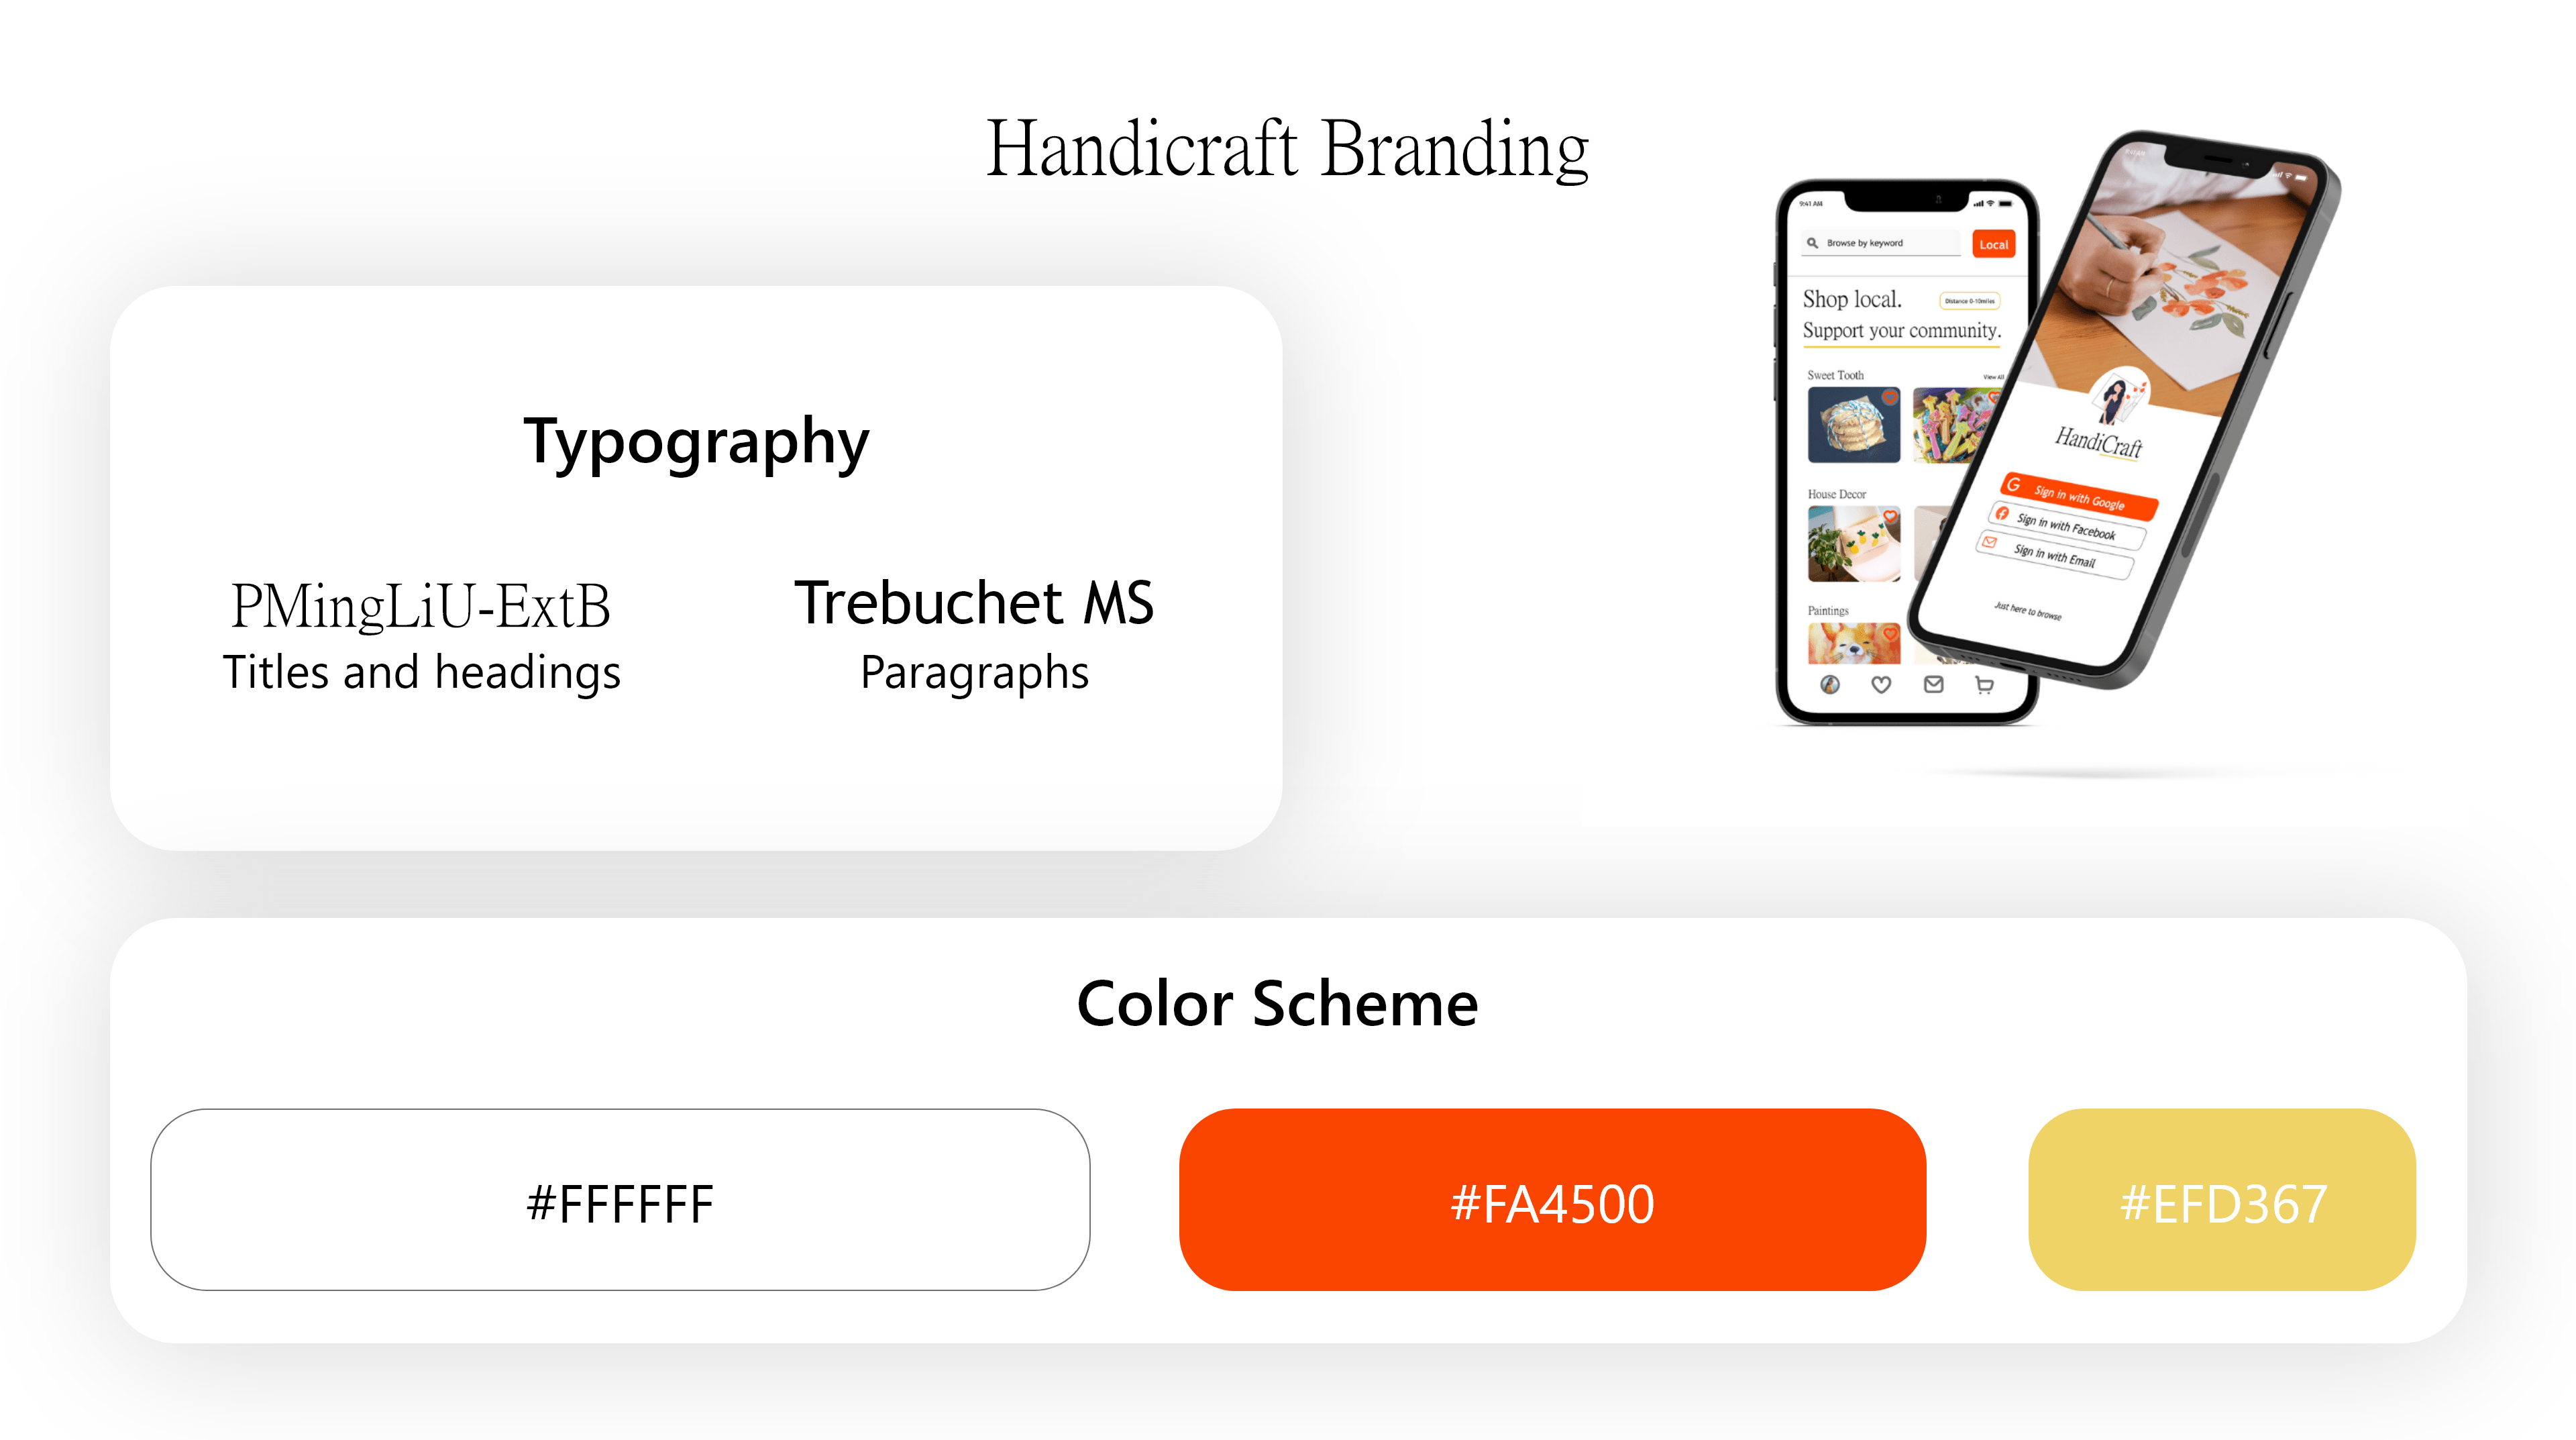 HandiCraft branding